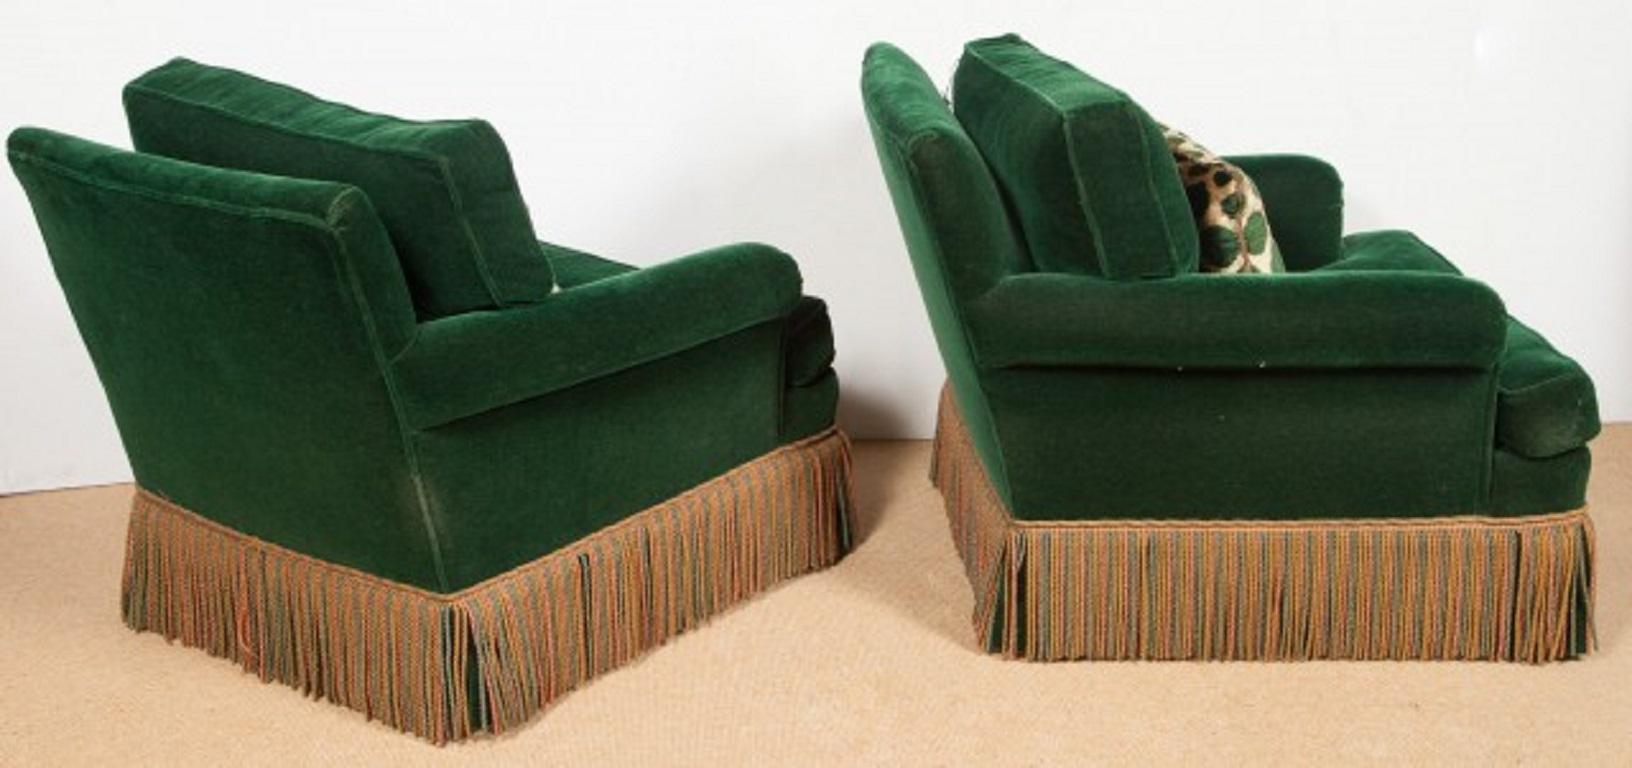 Paar Art Deco Sessel mit grünem Samtbezug aus den 1940er Jahren.  Die Stühle haben Fransenschürzen und den Original-Samtstoff. Die Kissen sind nicht original, aber schön gemacht.  Es gibt ein Paar passender Ottomane, die separat verkauft werden. 